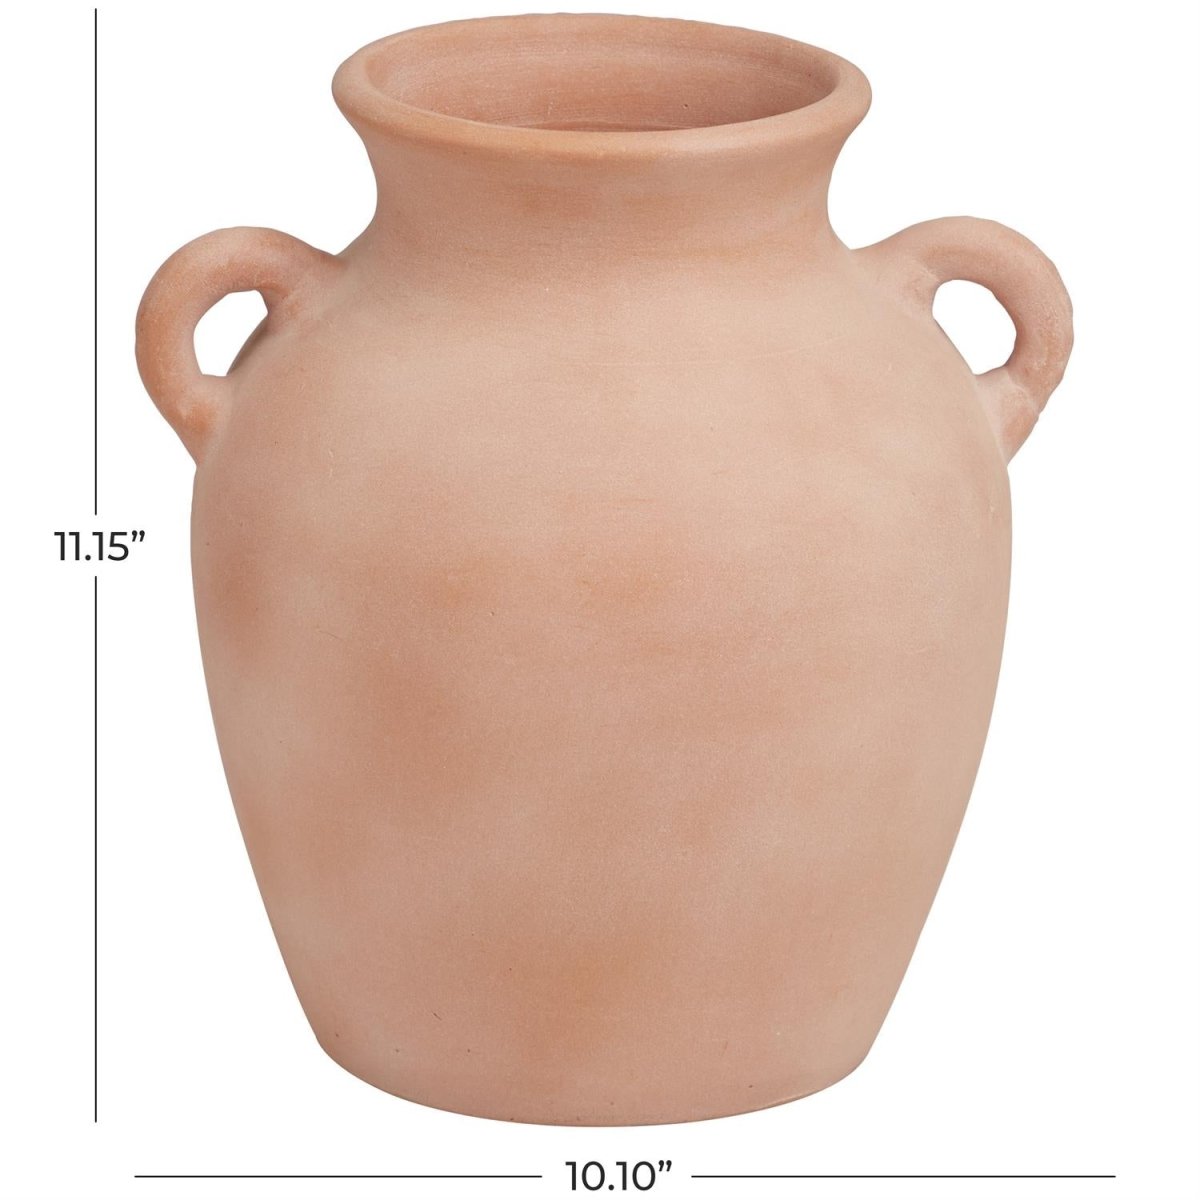 Terracotta Jug Vases